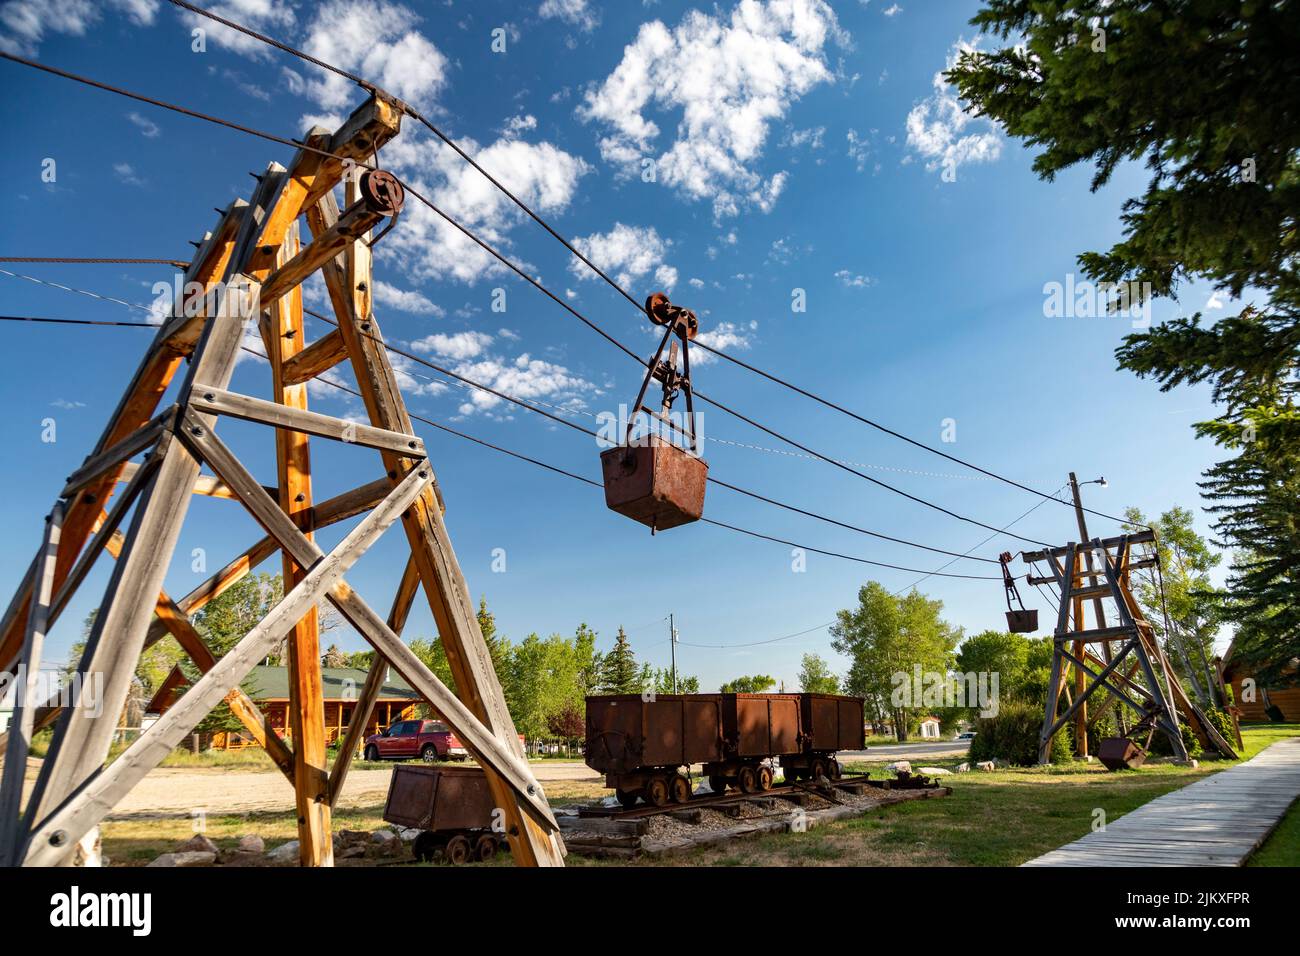 Campamento, Wyoming - El Museo del Gran Campamento destaca la historia minera, ganadera y maderera de la ciudad. Un tranvía aéreo de 16 millas, el largo Foto de stock